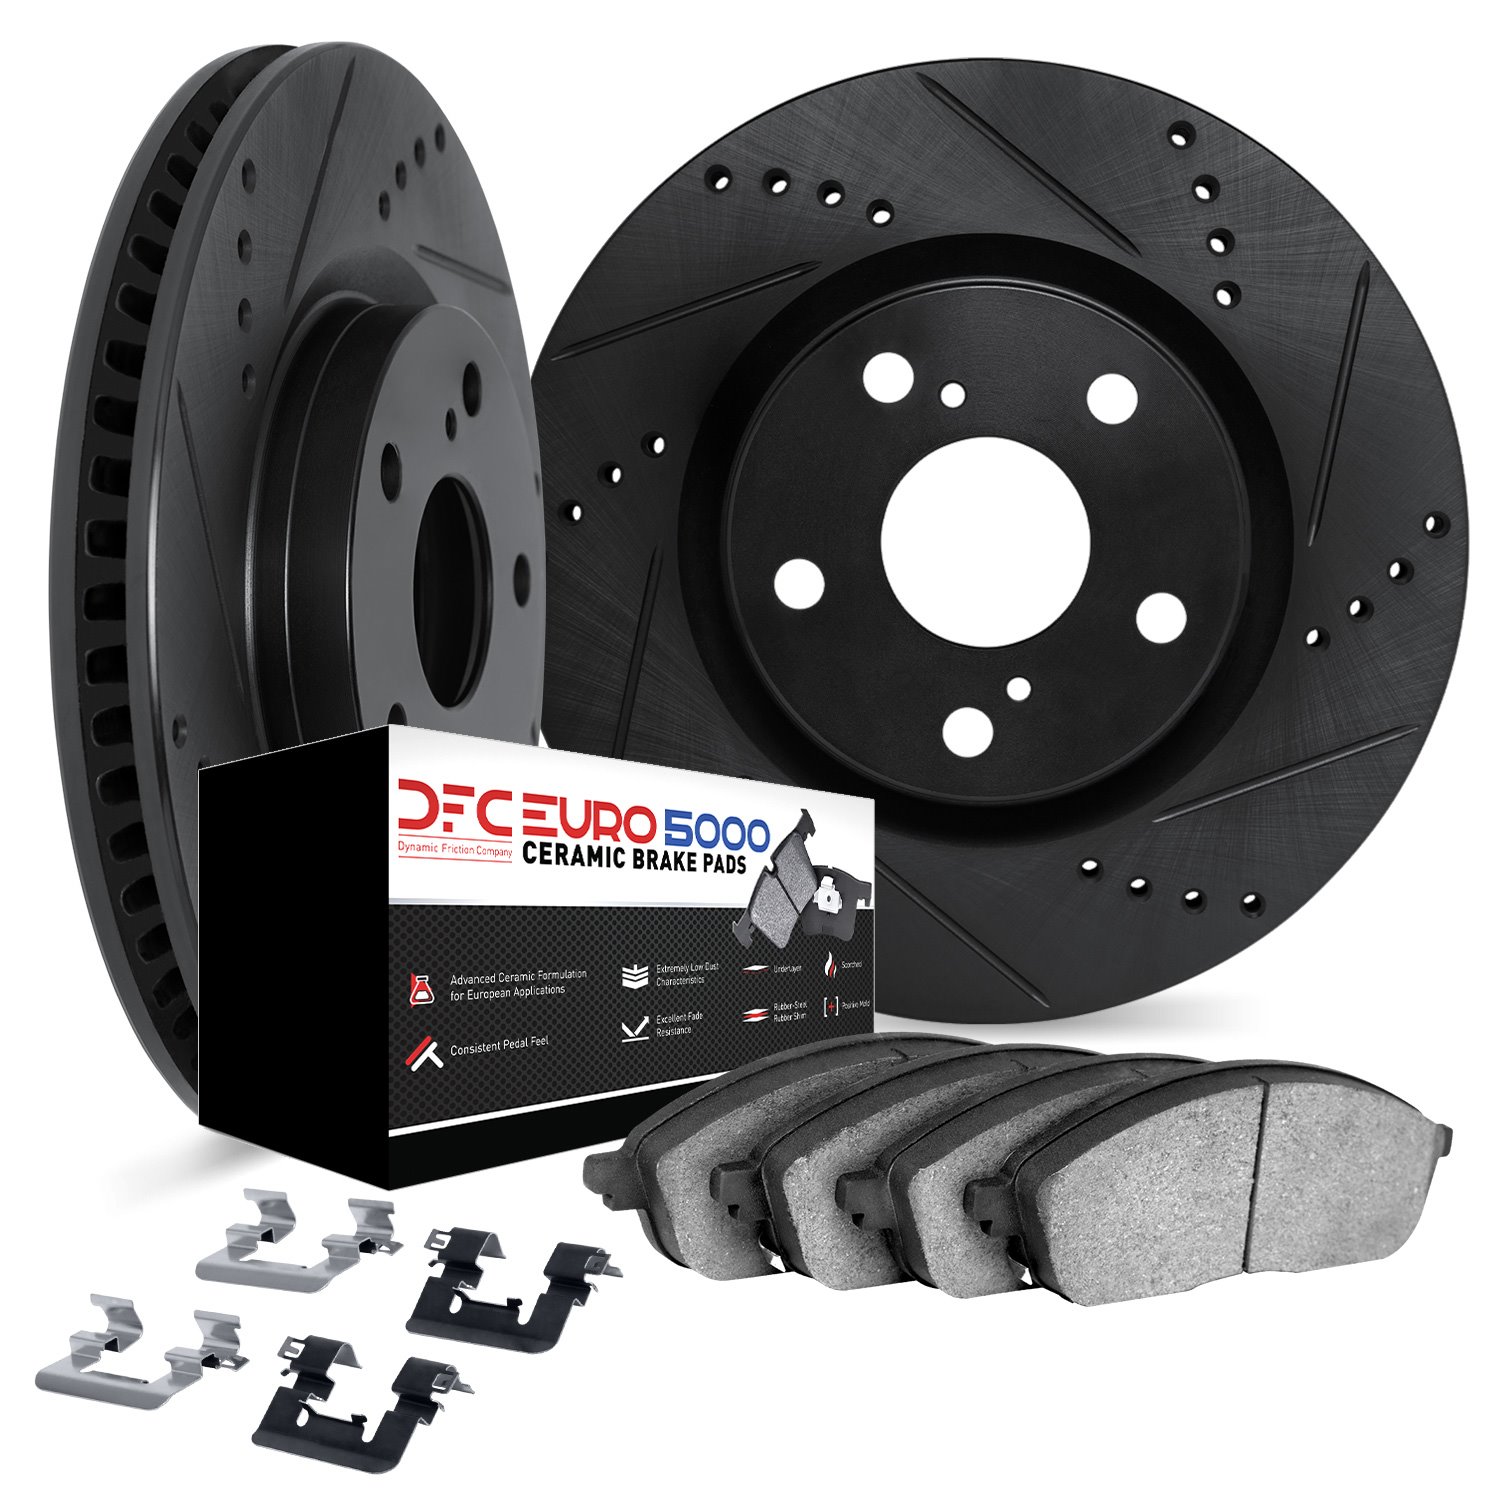 8612-31092 Drilled/Slotted Brake Rotors w/5000 Euro Ceramic Brake Pads Kit & Hardware [Black], 2011-2019 BMW, Position: Rear